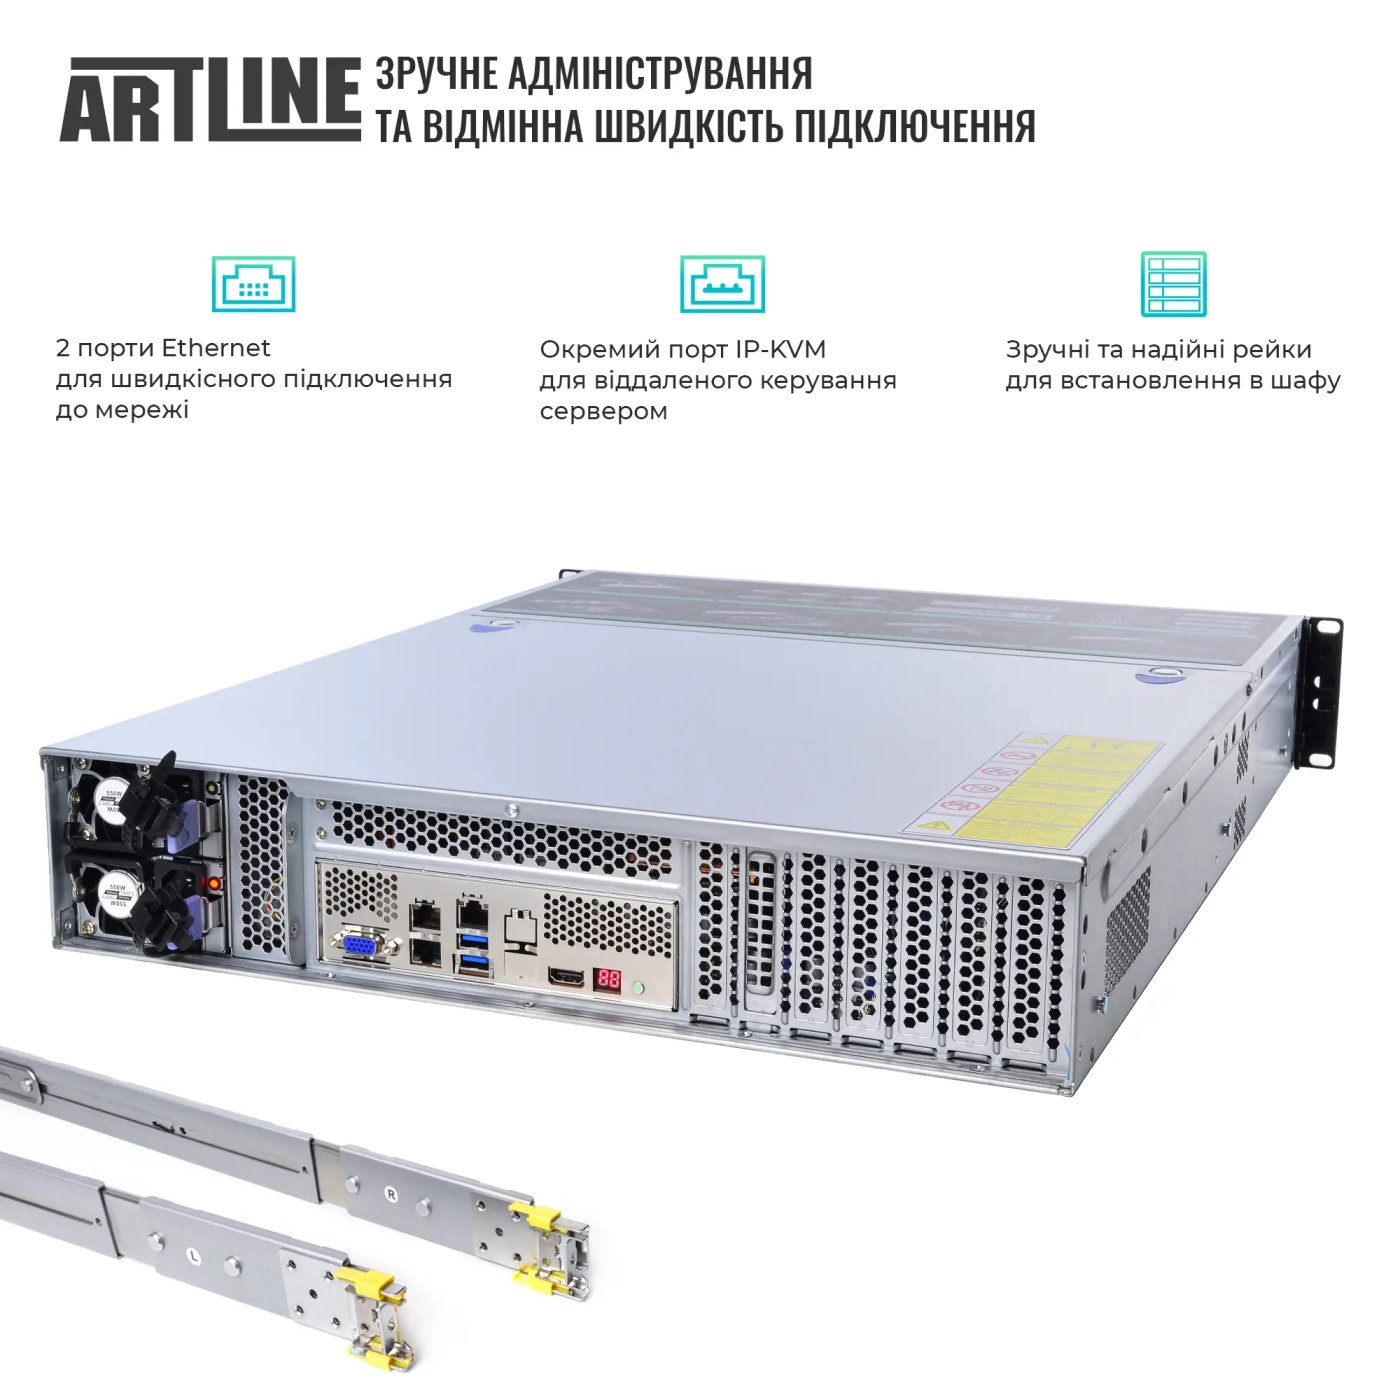 Купить Сервер ARTLINE Business R37 (R37v70) - фото 3